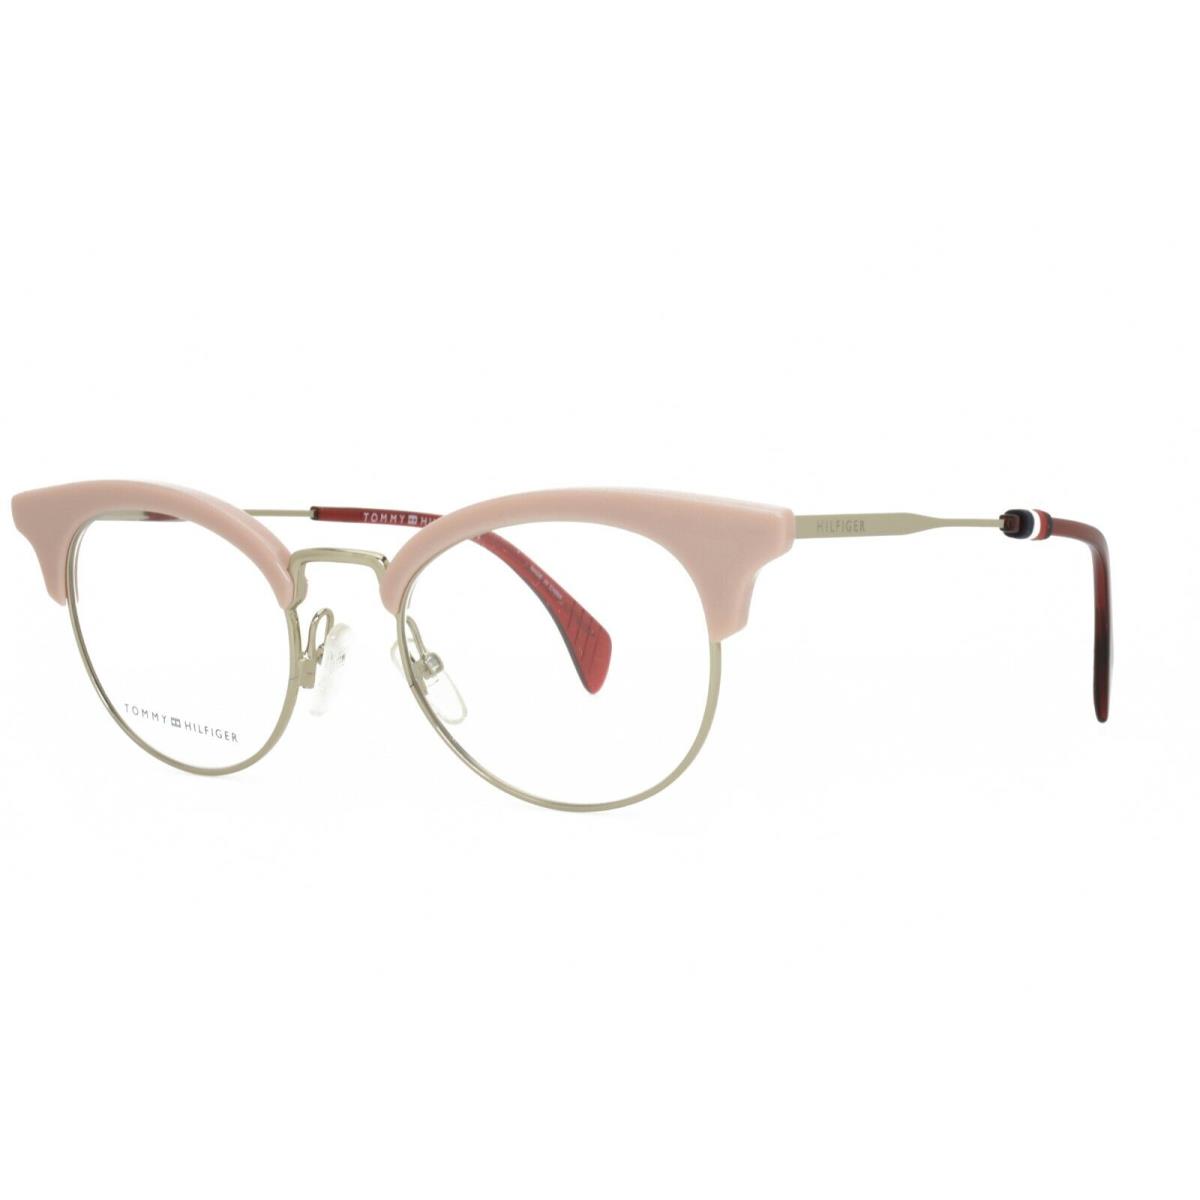 Tommy Hilfiger Eyeglasses 1540 35J 49-20-145 Pink